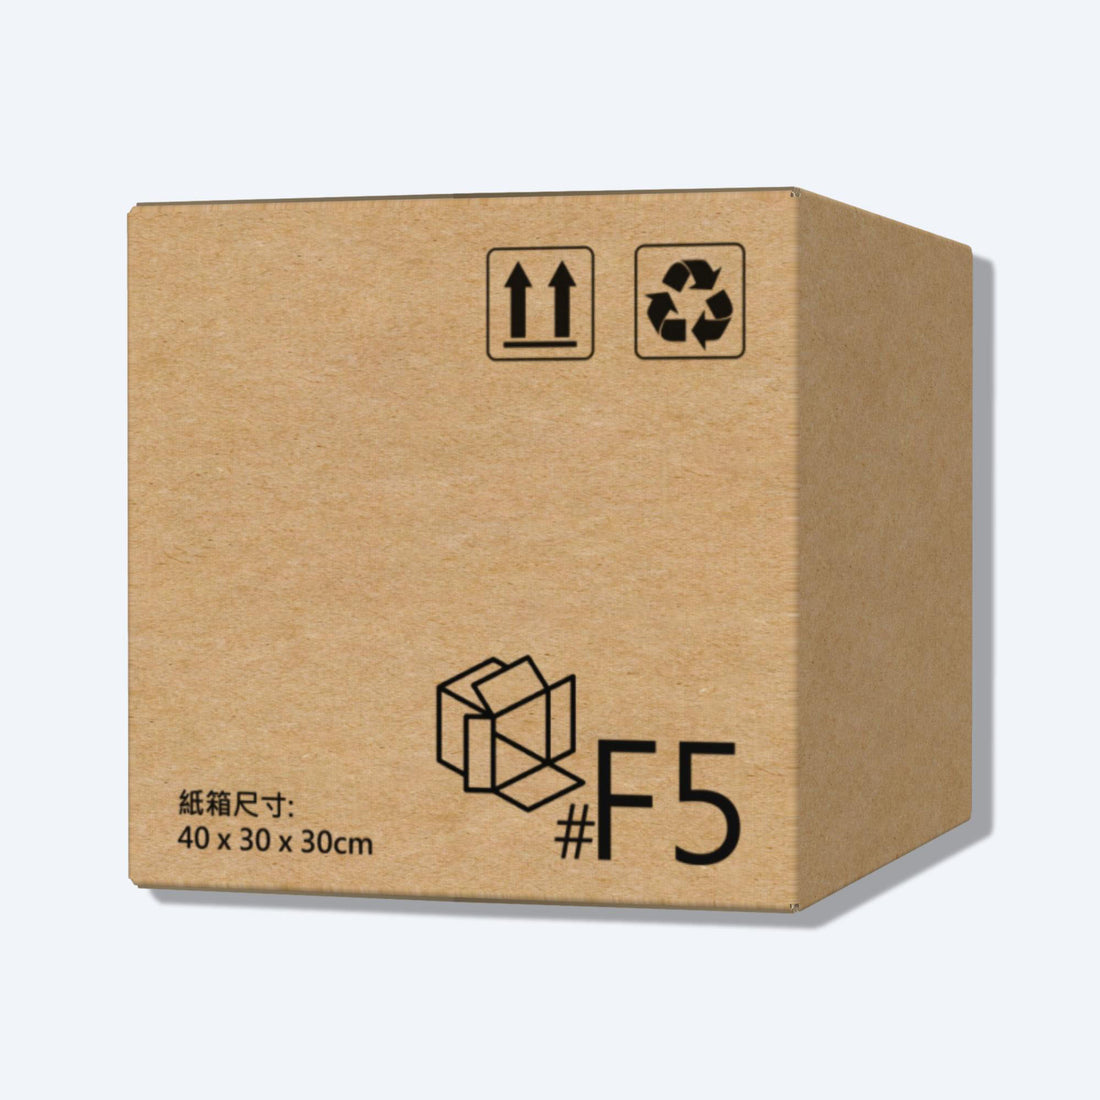 順豐F5尺寸紙箱展開圖，其尺寸符合順豐速運的包裝標準，展示折疊和組裝方式。